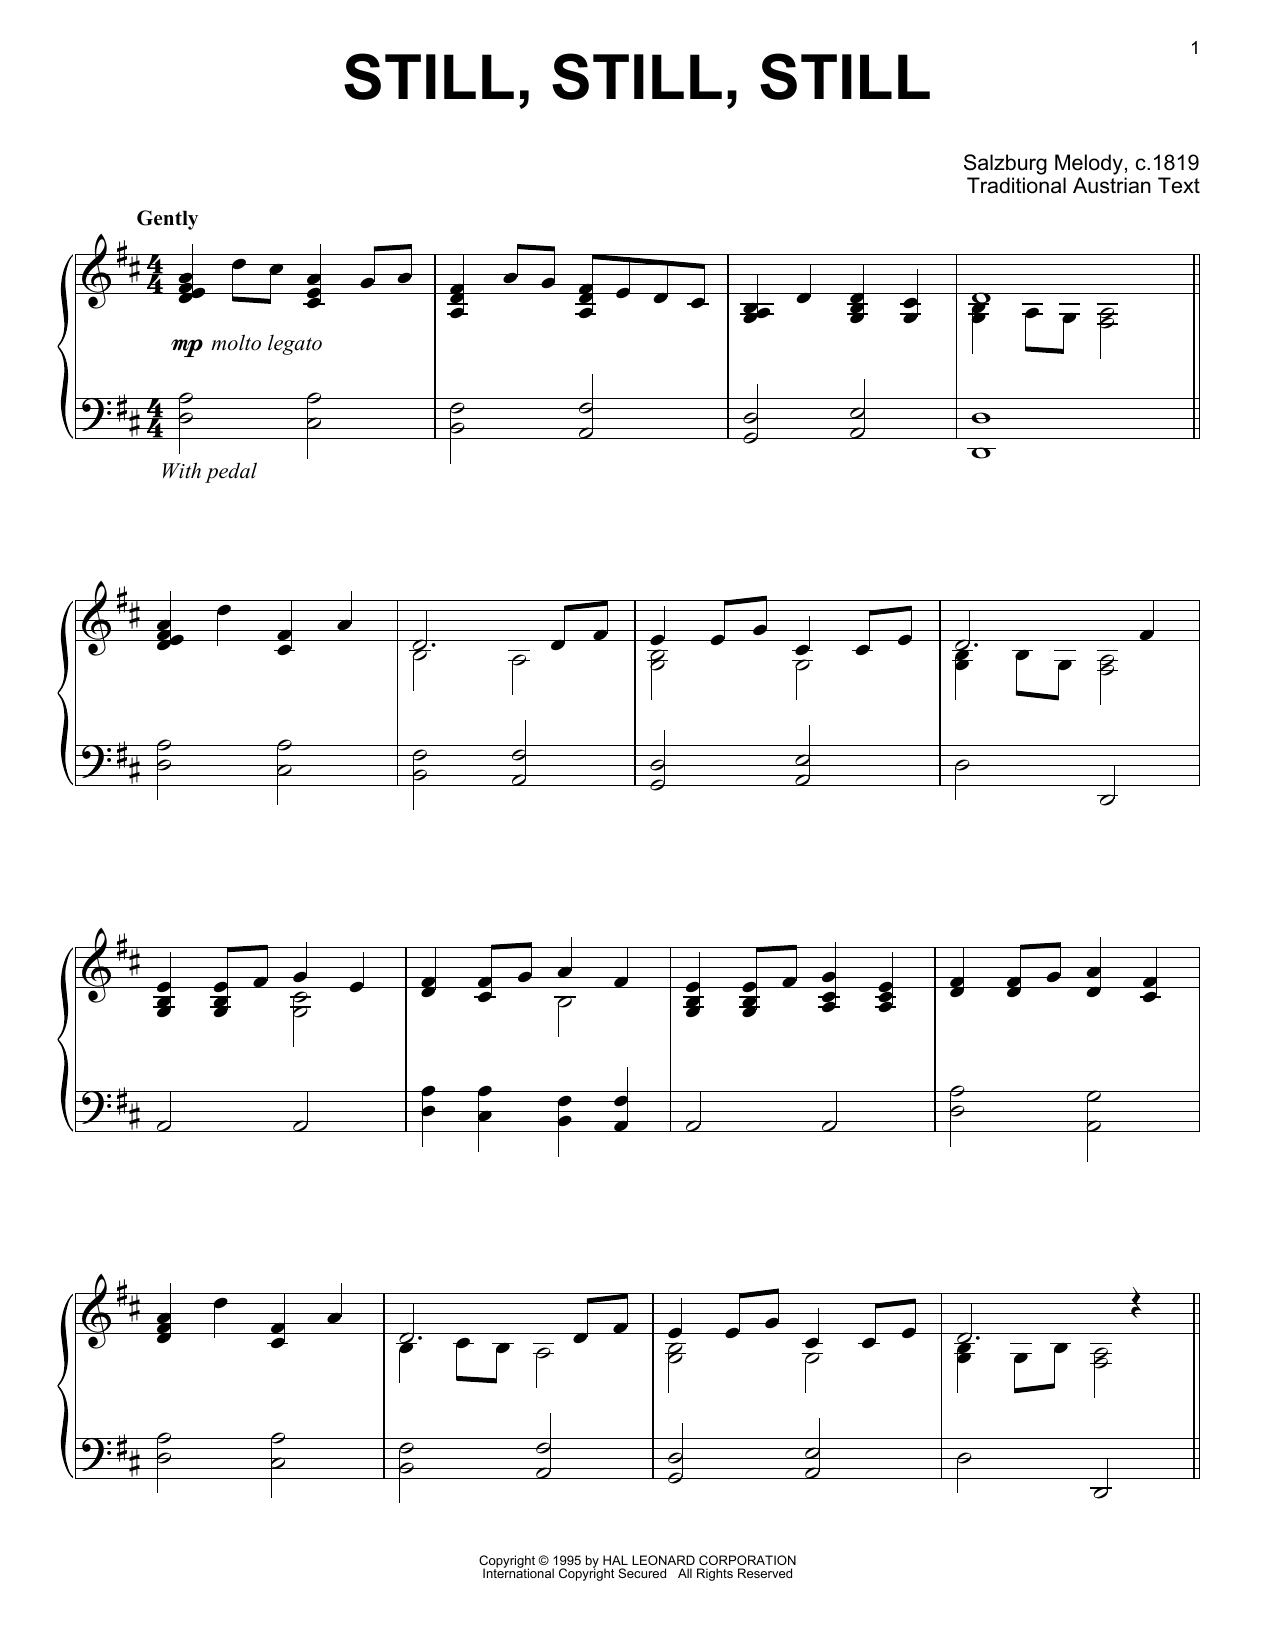 Traditional Austrian Text Still, Still, Still Sheet Music Notes & Chords for Flute - Download or Print PDF